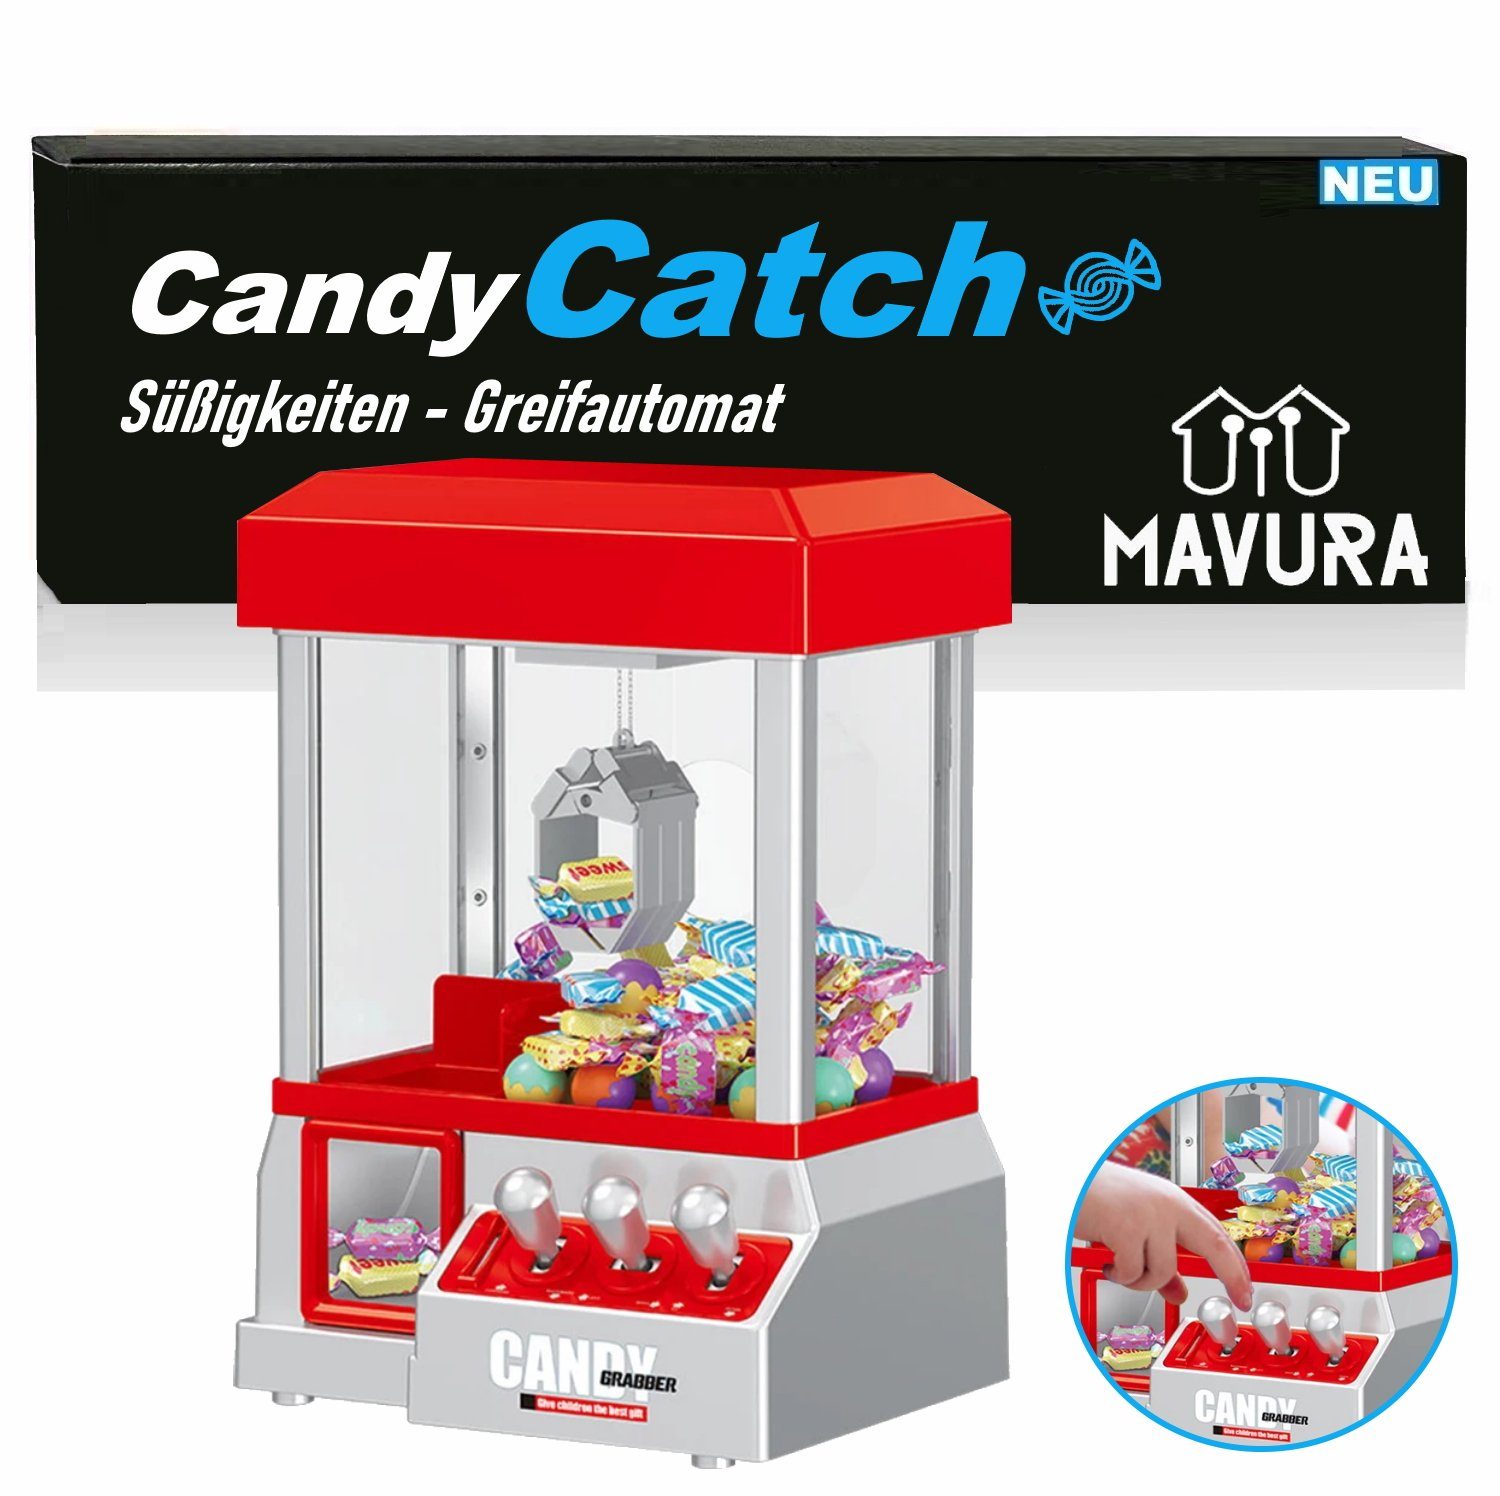 MAVURA Spiel, CandyCatch Süßigkeiten Greifautomat Candy Grabber Mini, Süßigkeitenautomat Spielautomat